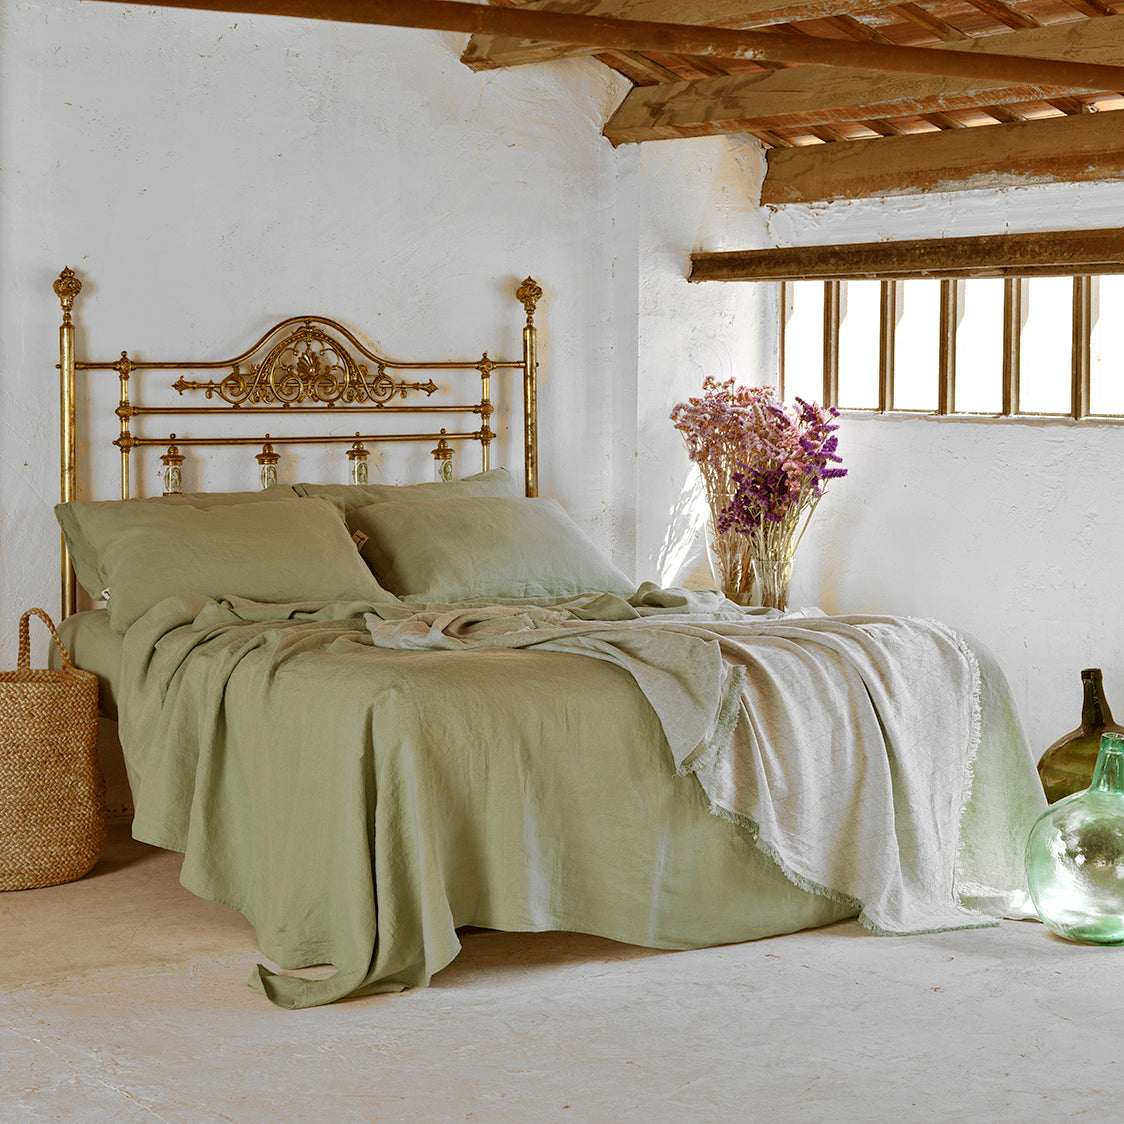 Juego de sábanas verde olivo en cama de bronce antigua. Plaid decorativo a pie de cama.